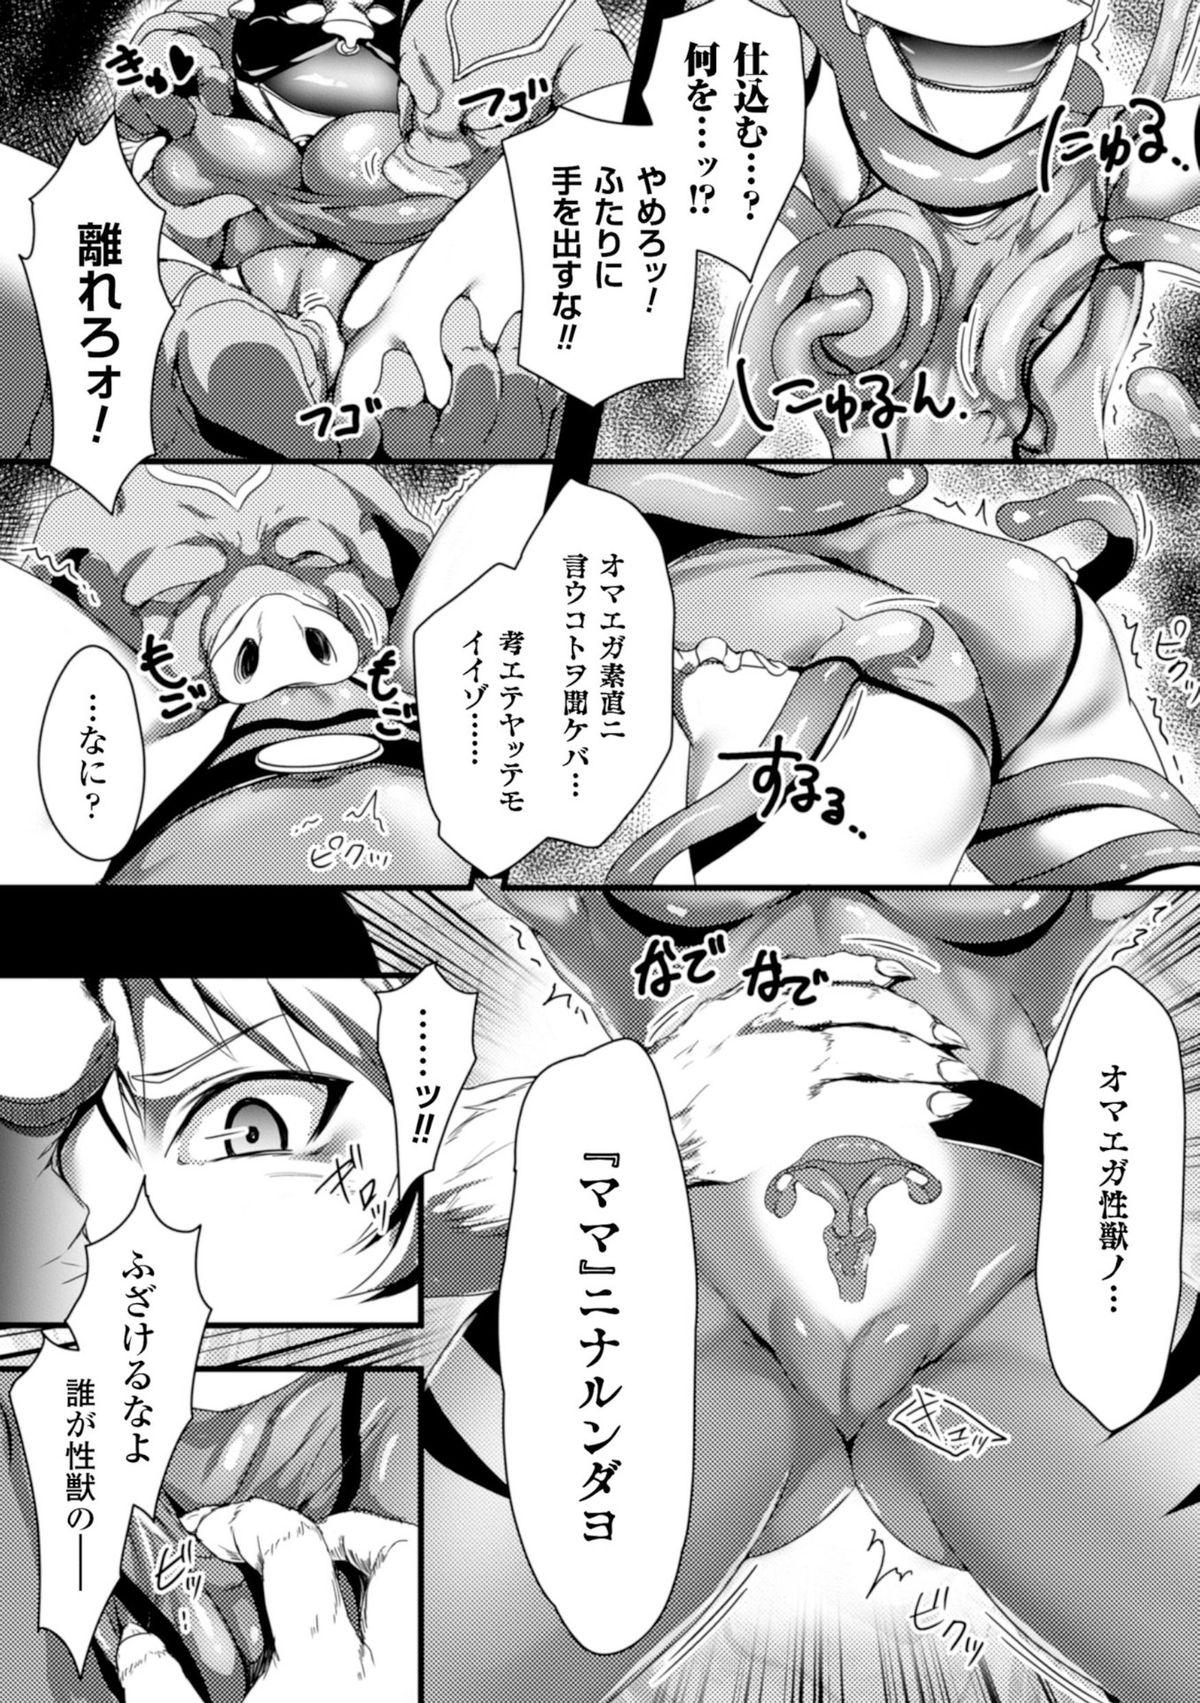 Internal Seigi no Heroine Kachiku Bokujou Vol. 1 Rubdown - Page 6